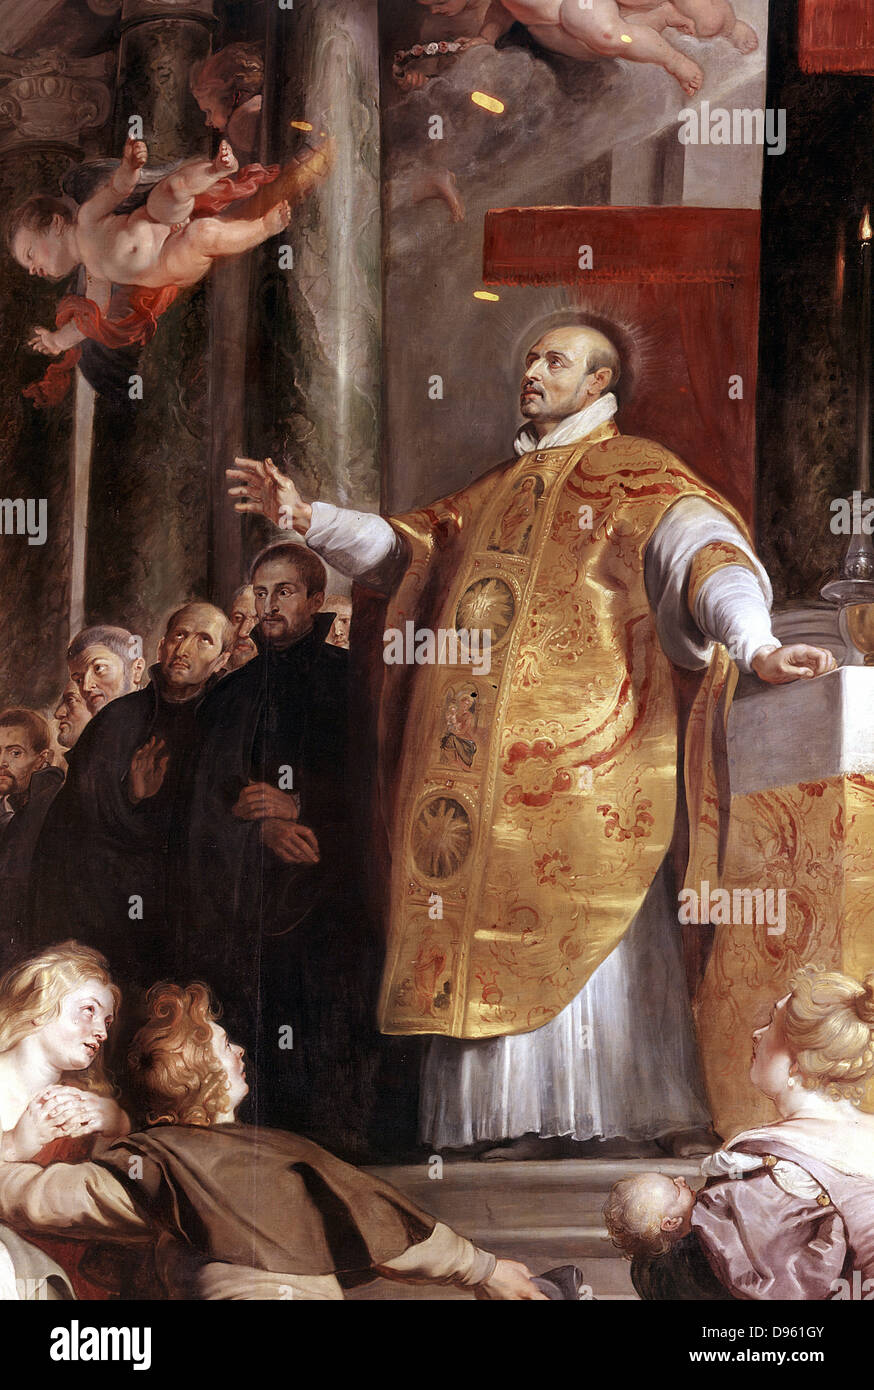 Sant Ignazio di Loyola ( Inigo Lopez de Rocalde 1491-1556) soldato spagnolo, fondatore dei gesuiti. Quadro di Rubens. Kunsthistorisches Museum di Vienna Foto Stock